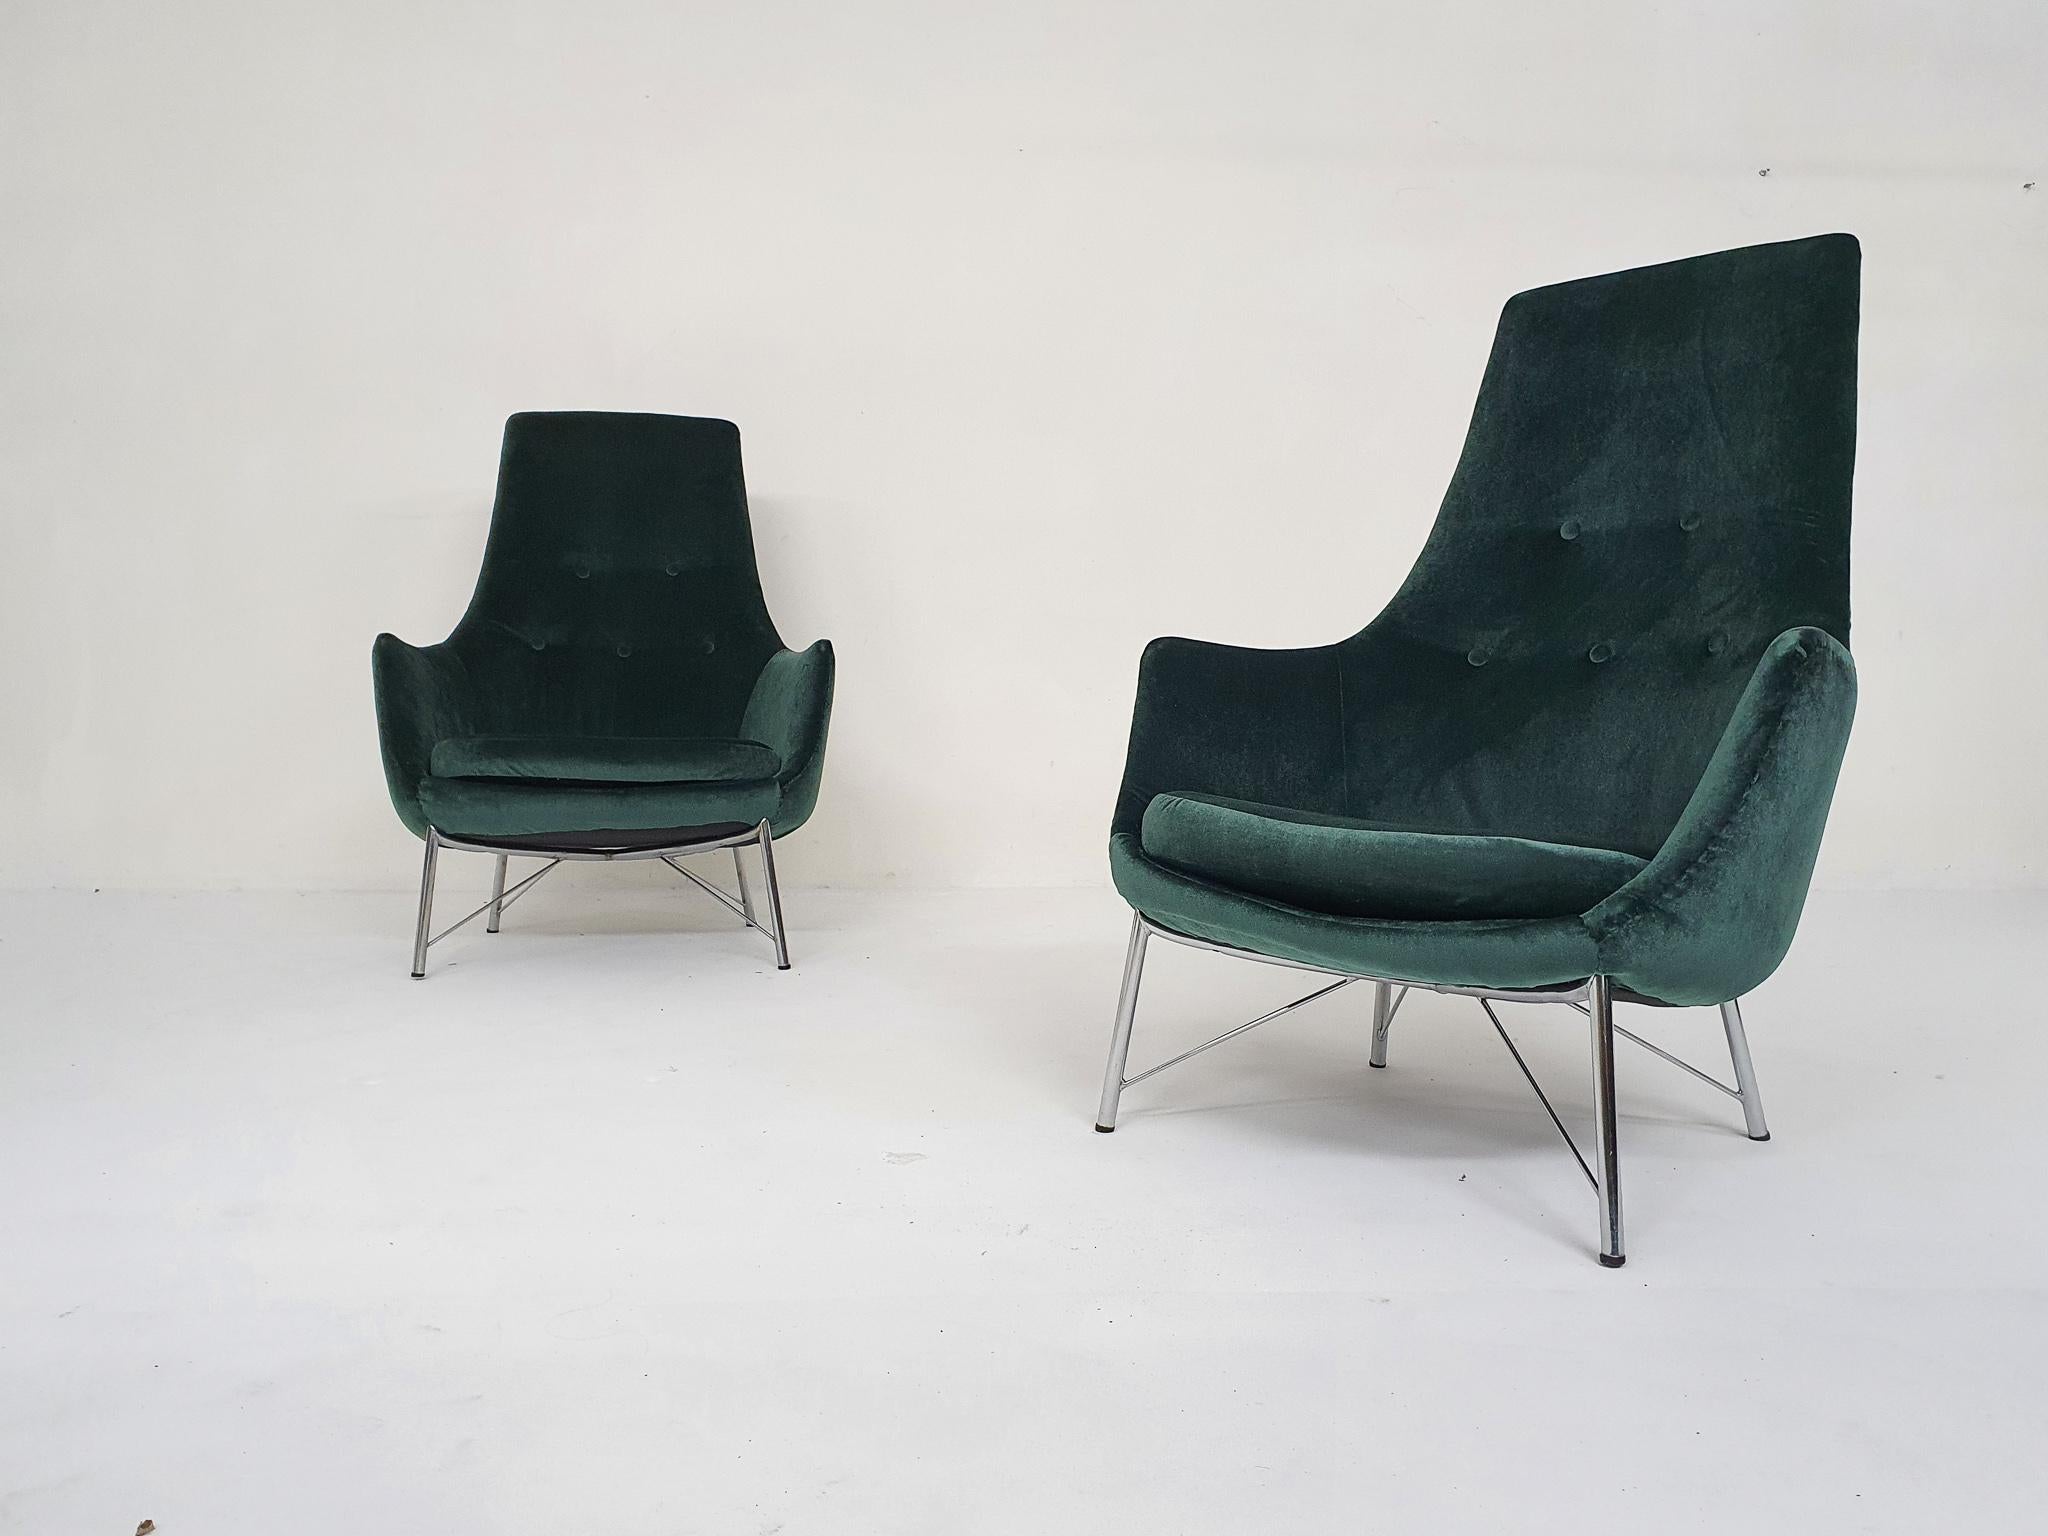 Set aus zwei leichten Loungesesseln von Karl Ekselius für Pastoe. Die Stühle wurden mit grünem Samt neu gepolstert.
Auf einem verchromten Sockel.